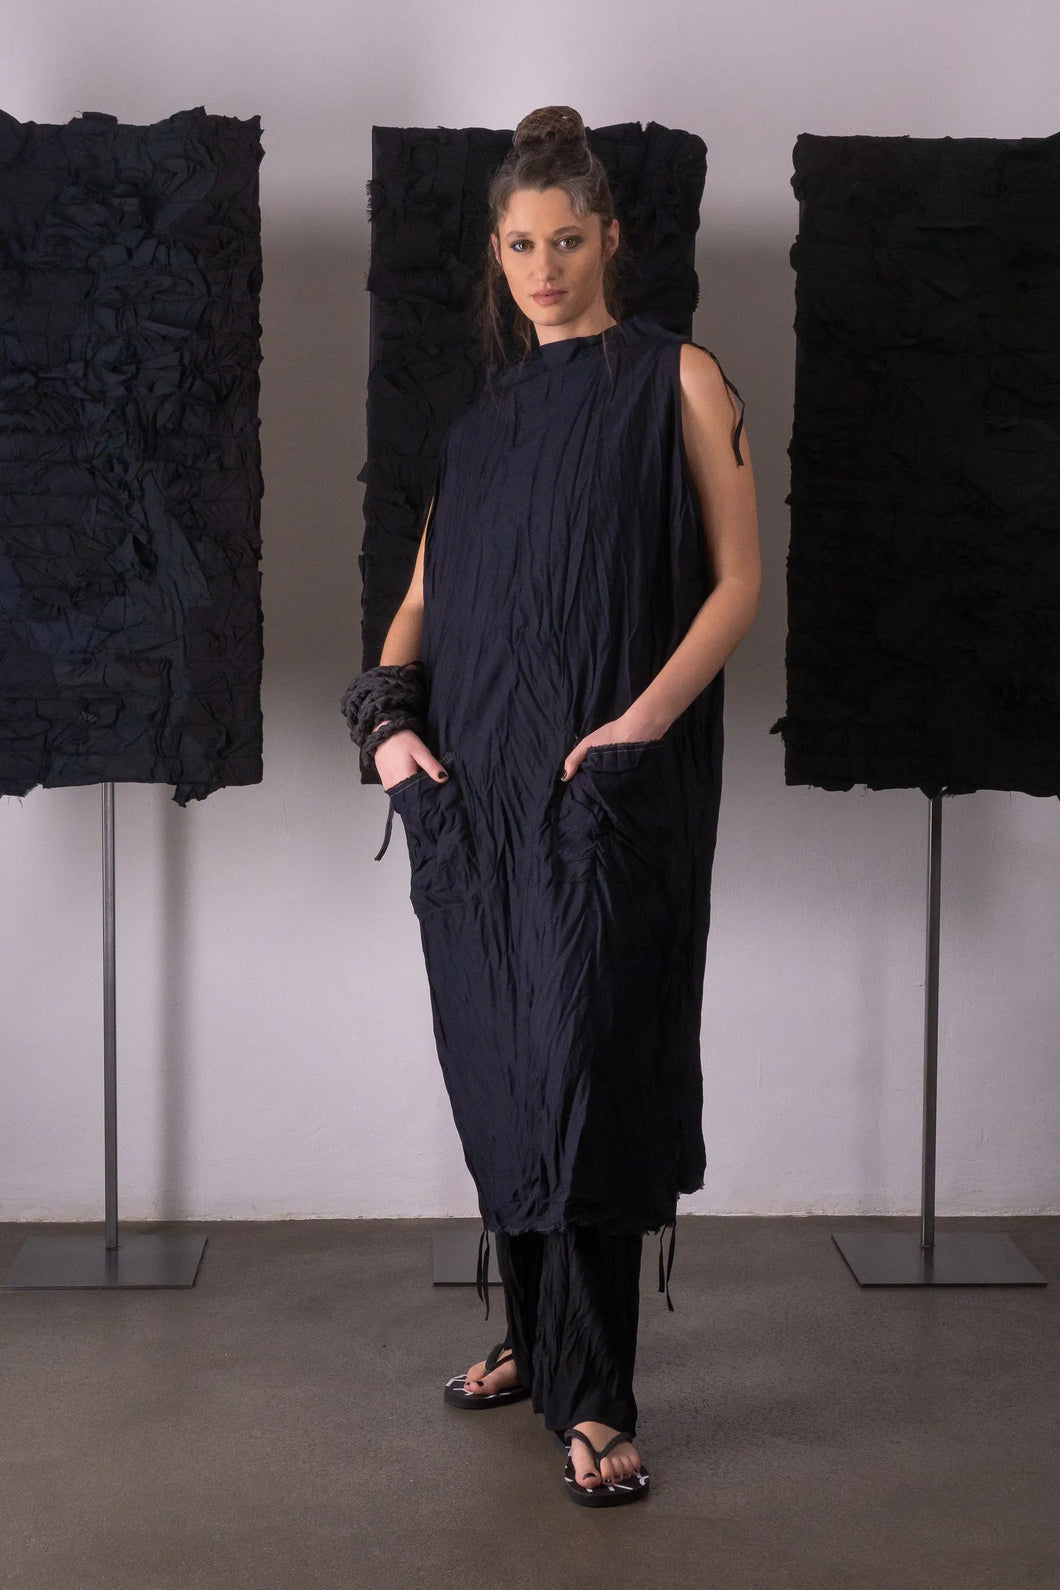 KAYIKO – Avantgarde Designer Mode aus Wien, Österreich – Avant-Garde Designer Fashion from Vienna, Austria